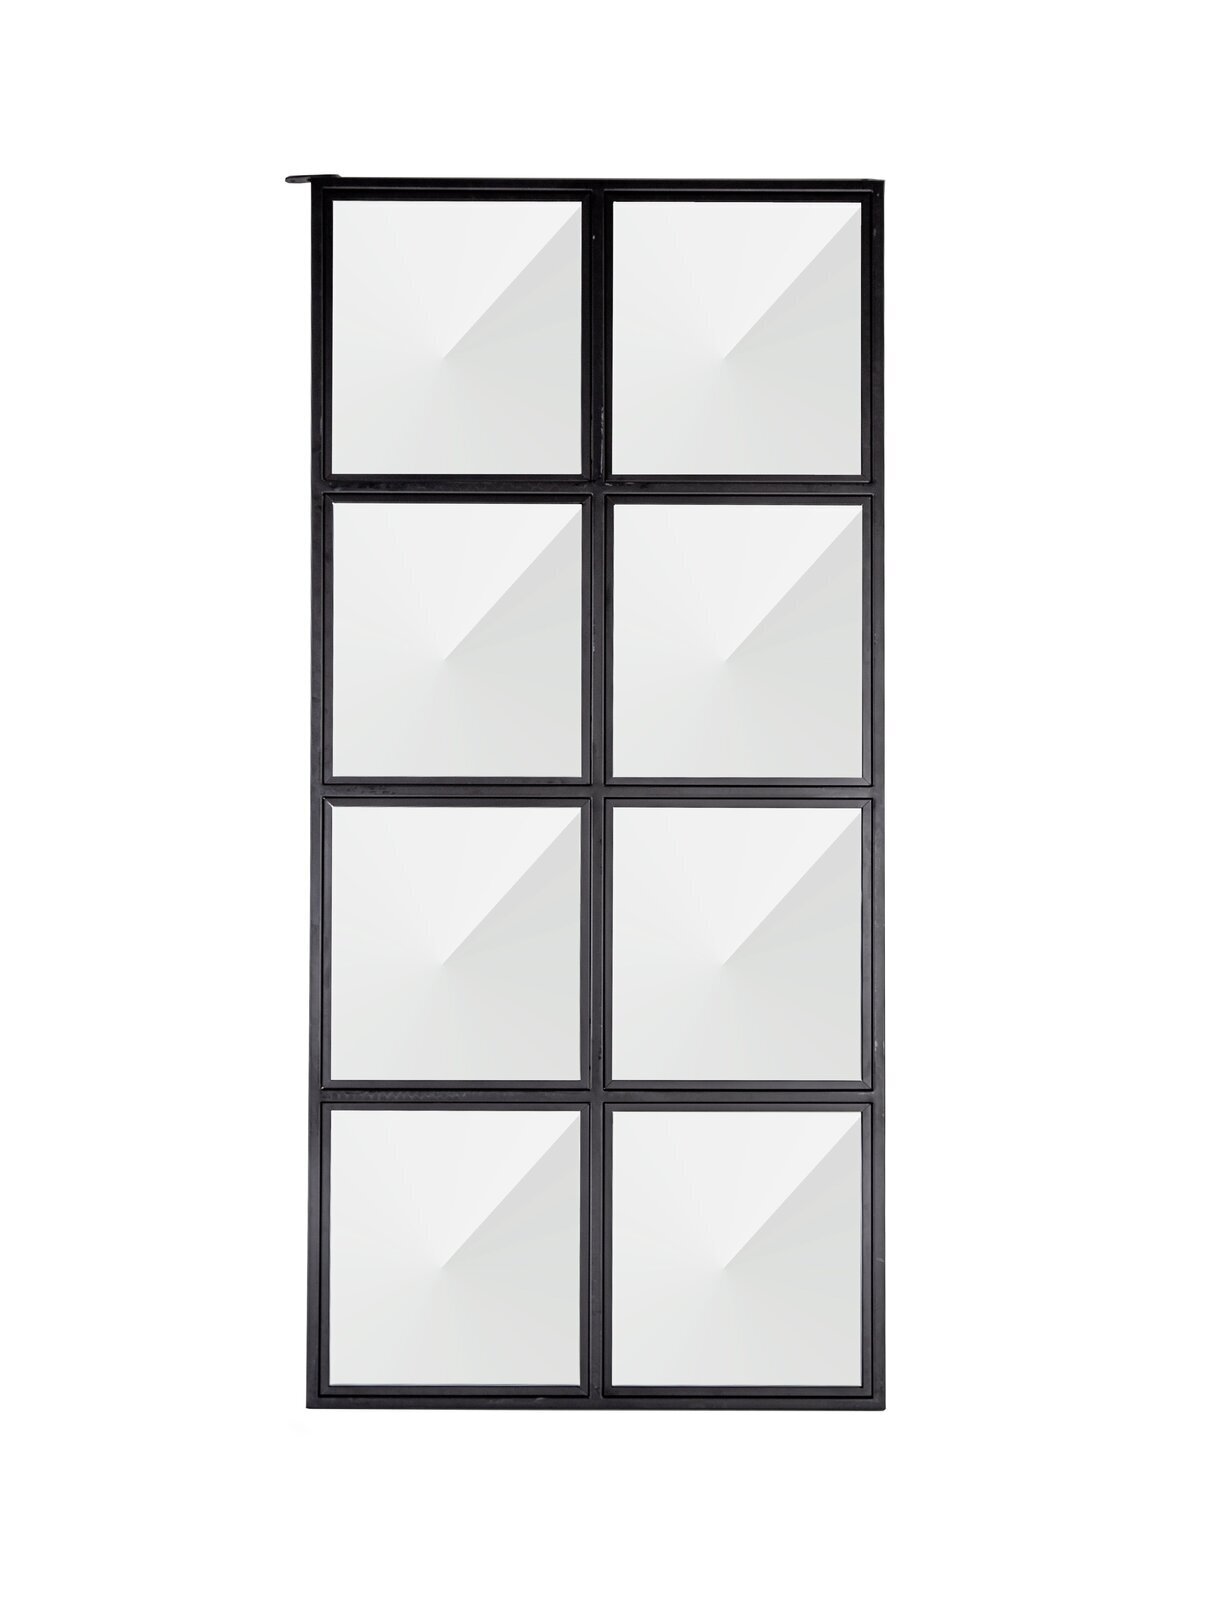 Black Framed Window Style Room Divider